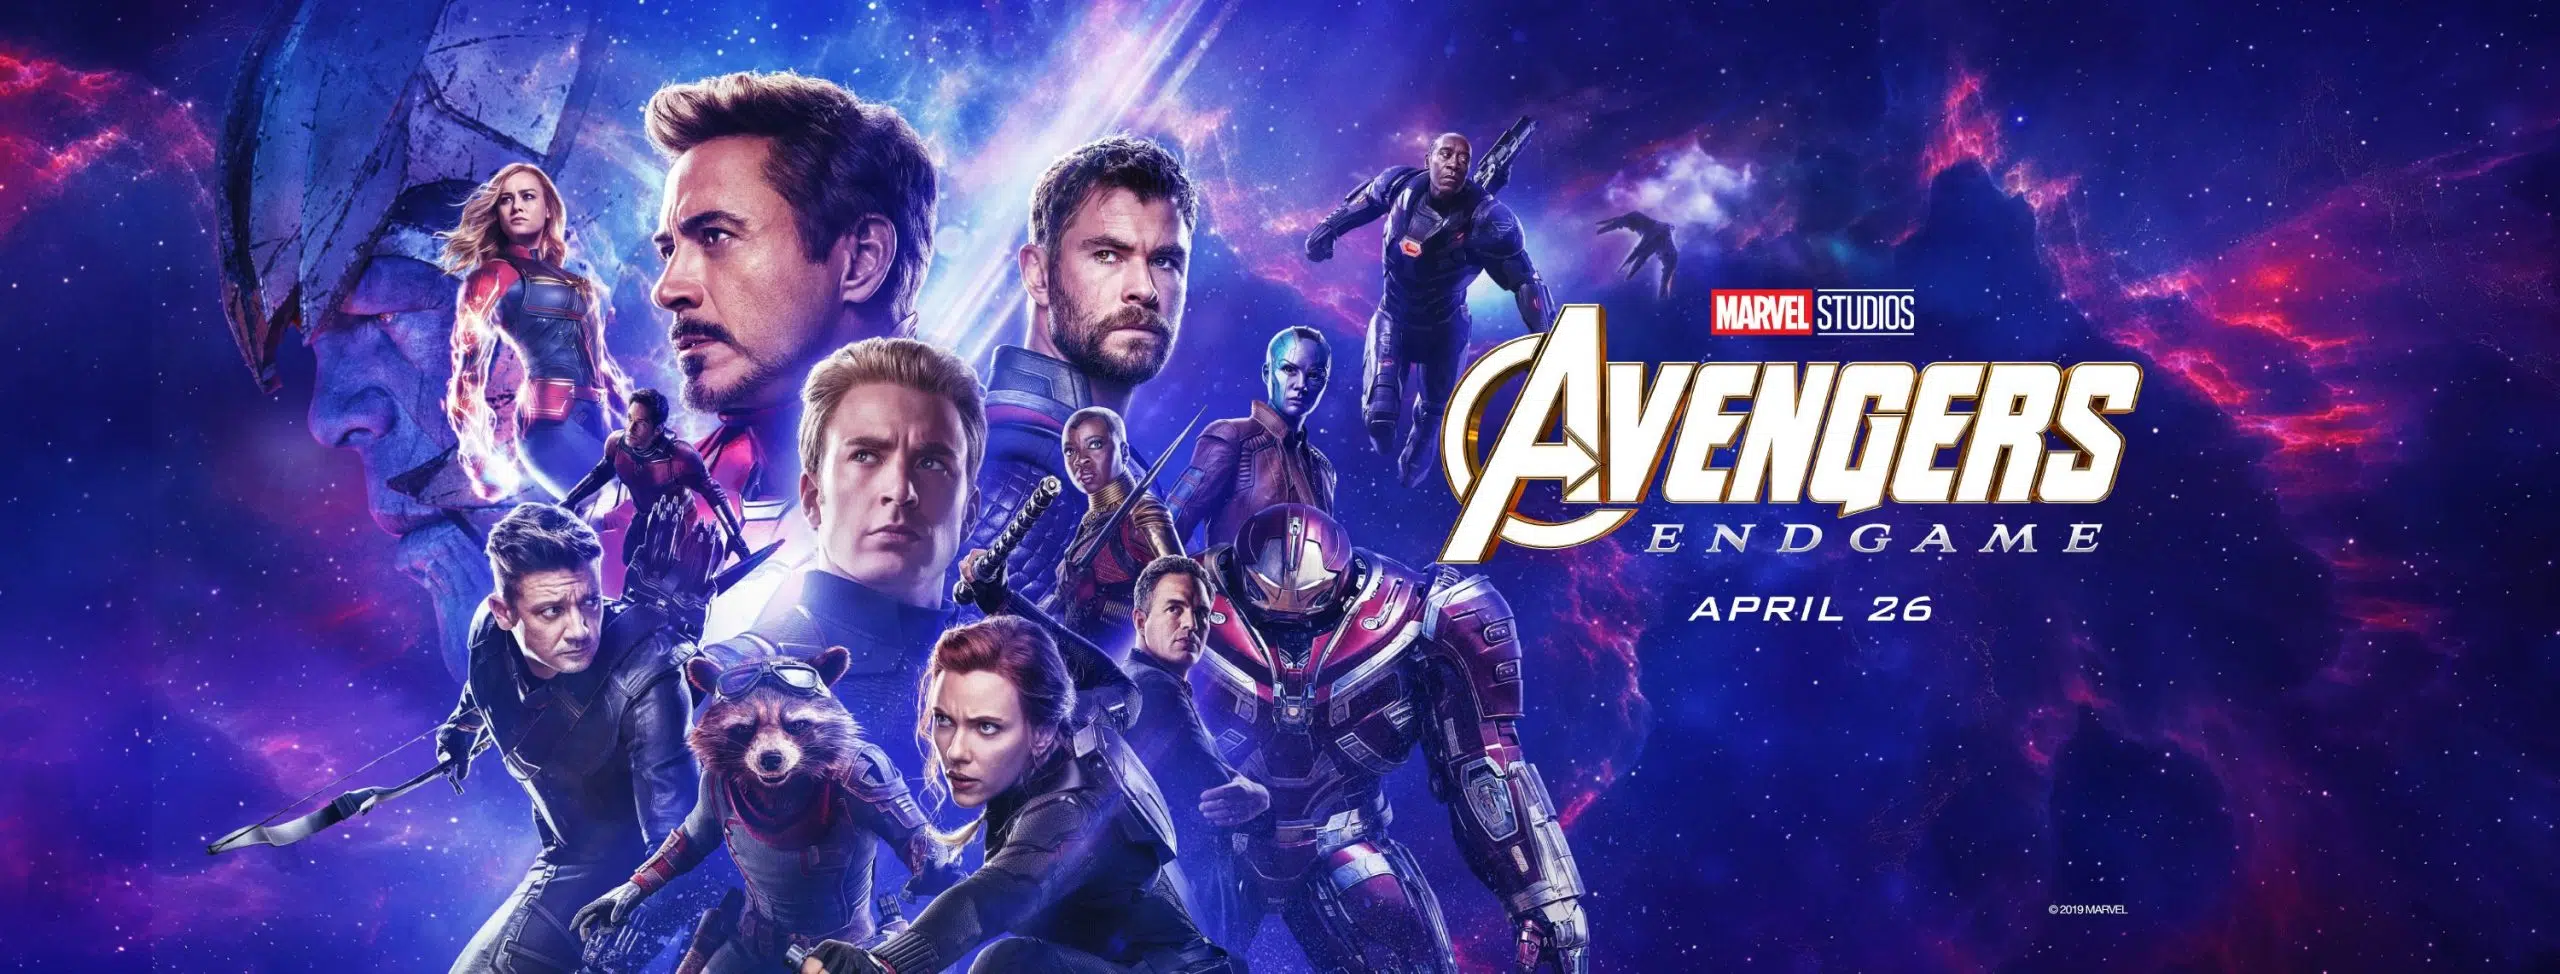 Marvel Studios’ Avengers: Endgame - “To the End”